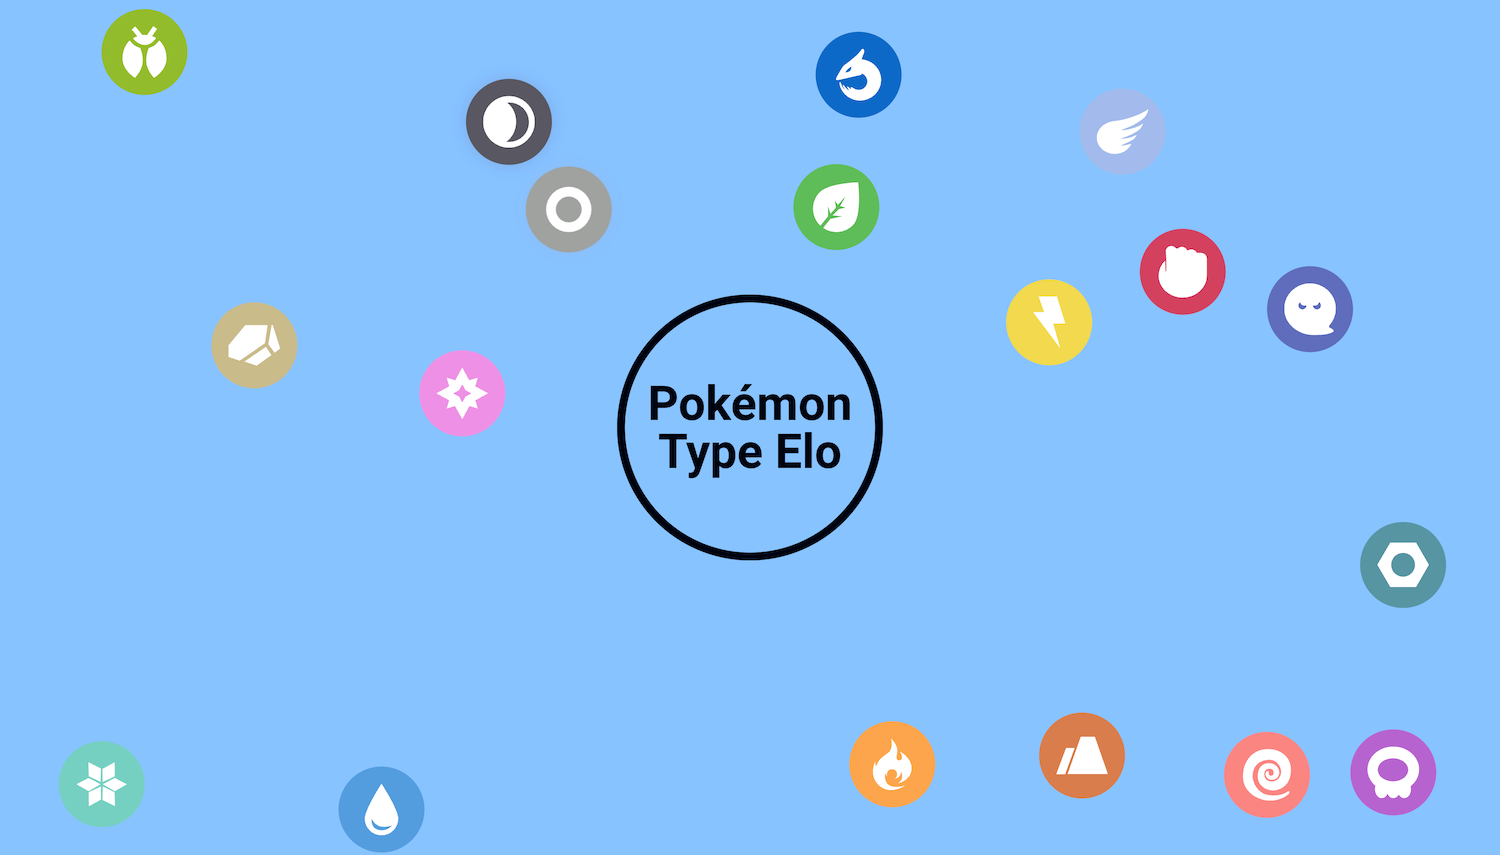 Pokémon Type Elo Media